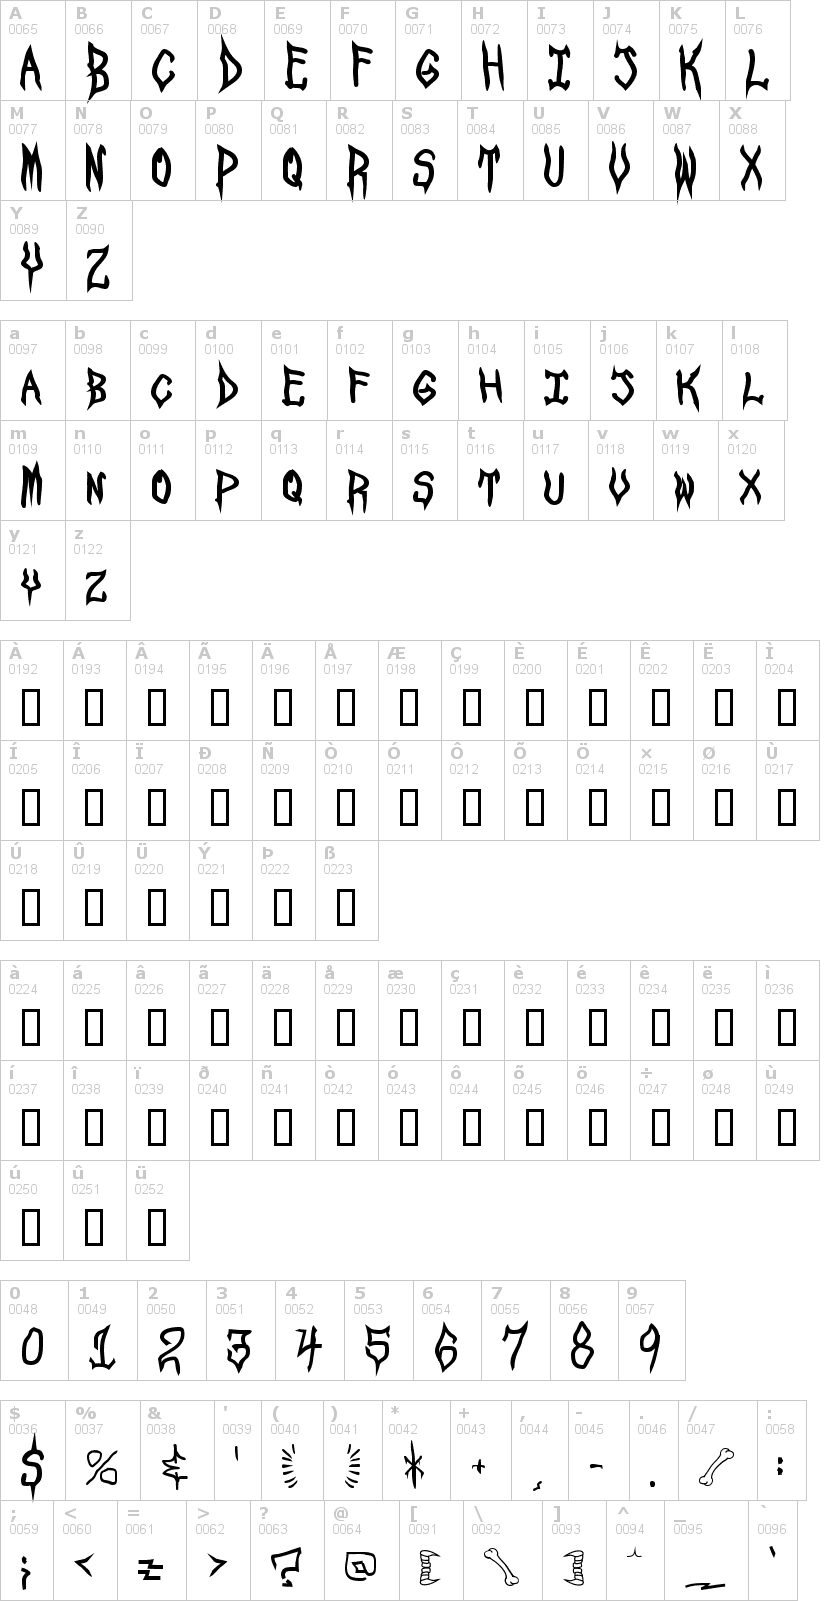 Lettere dell'alfabeto del font spook-show con le quali è possibile realizzare adesivi prespaziati